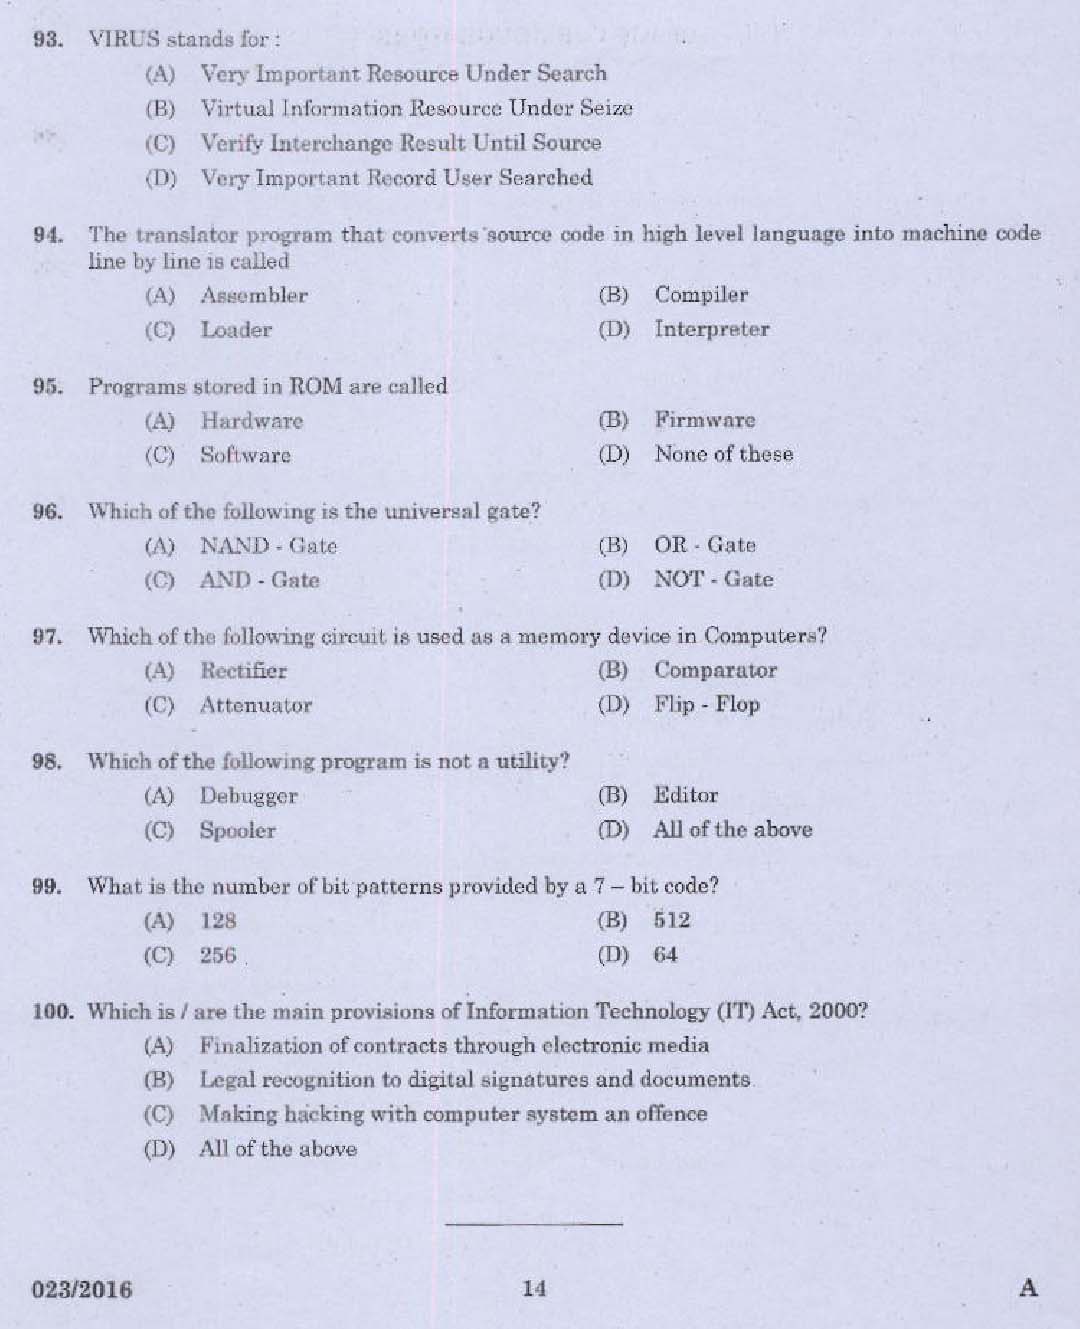 Kerala PSC Administrative Assistant Exam Question 0232016 12